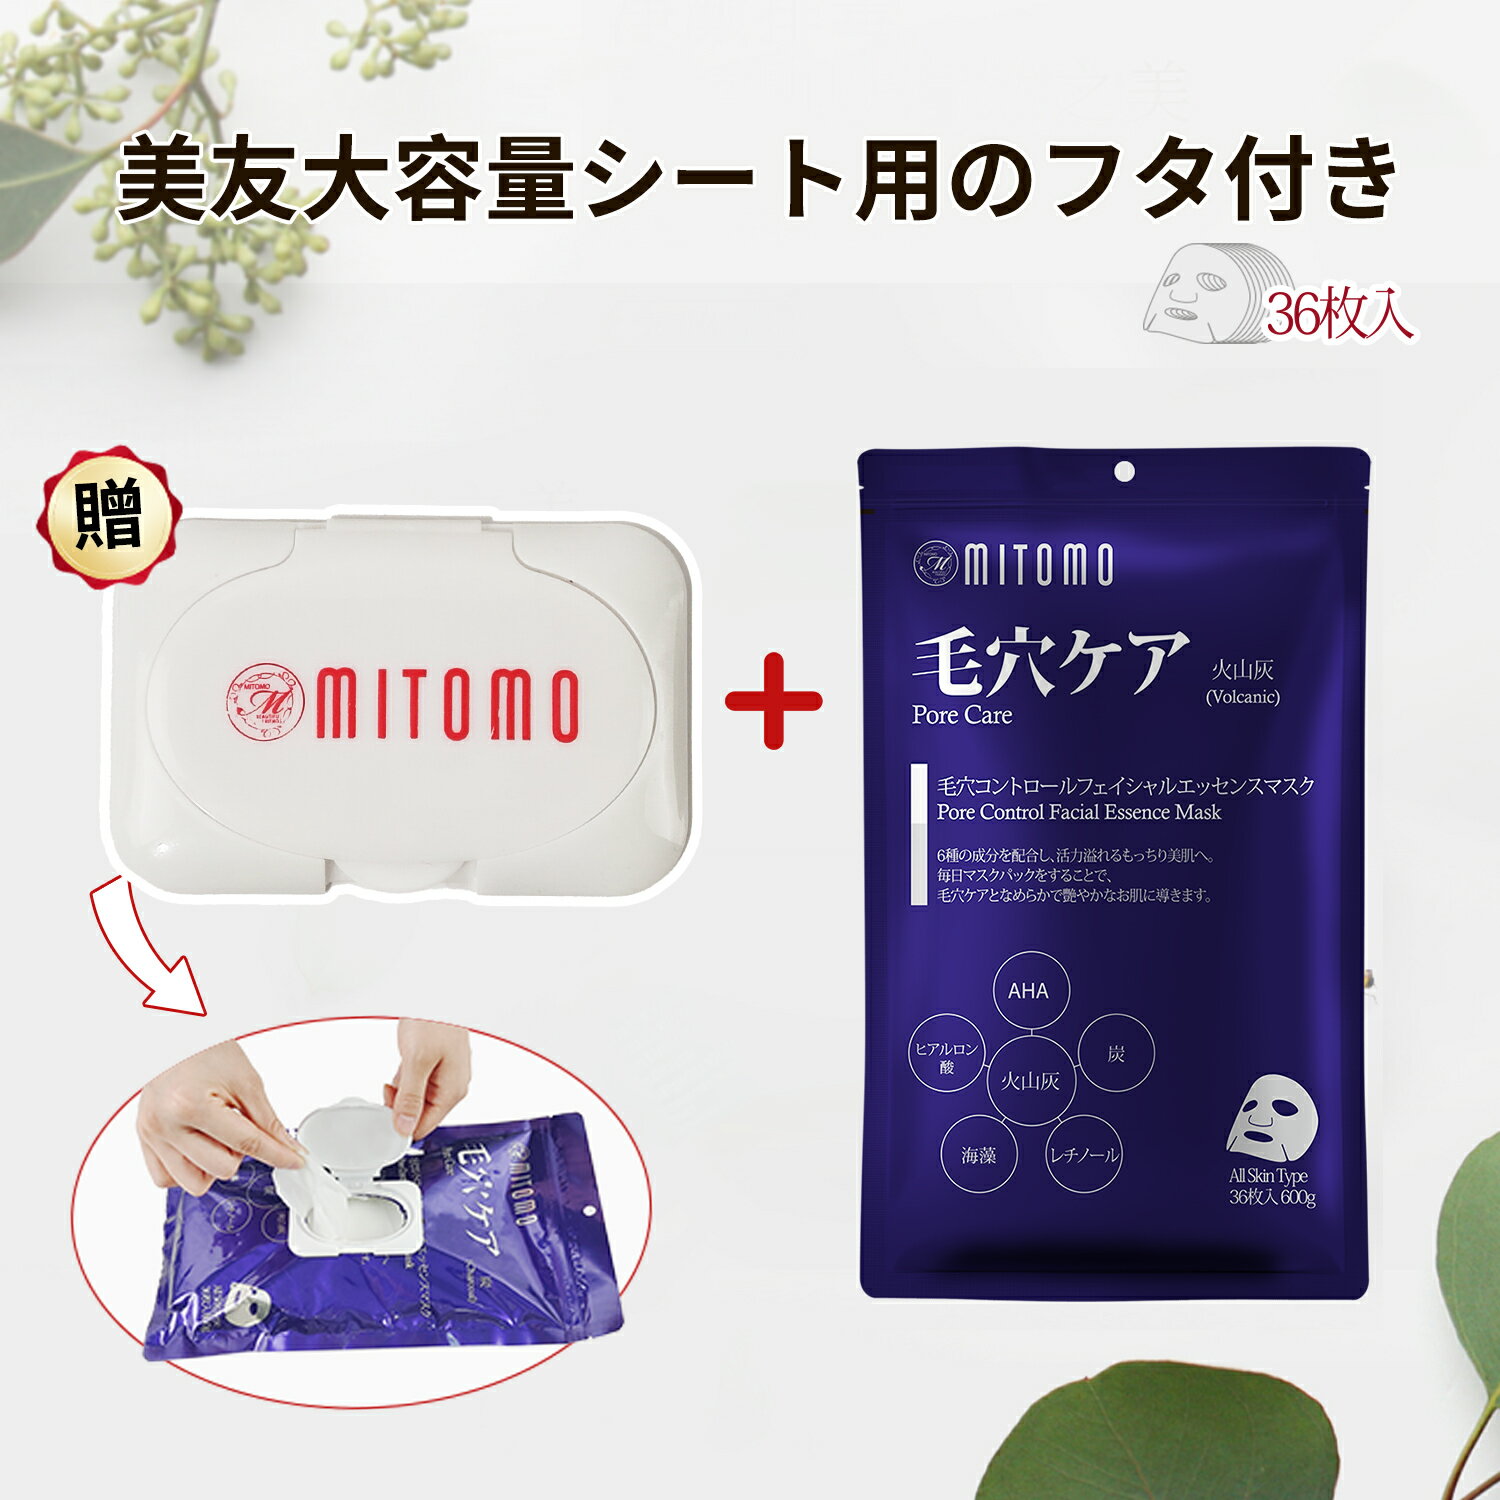 楽天うるうる【美友】日本製シートマスク36枚入り/栄養豊富な成分で肌の潤いを与える/自然派成分の力で肌を健康に【MT101-E-3-CAP】- 新しい美容技術を取り入れた製品で、美しさを引き出すパートナー[MTSA00101-E-3+CAP]